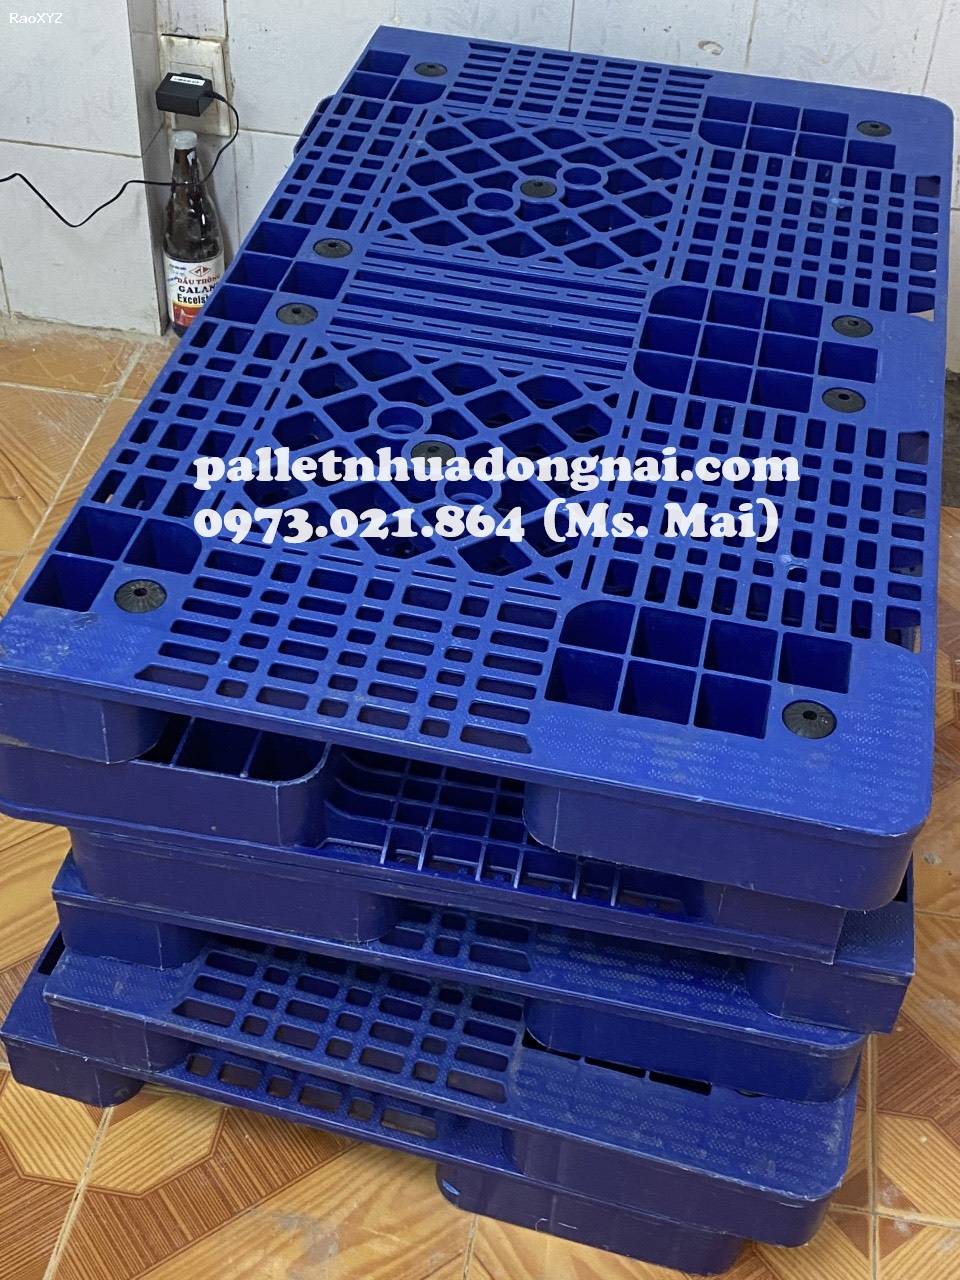 Pallet nhựa giá rẻ tại Đăk Lăk, liên hệ 0973021864 (24/7)